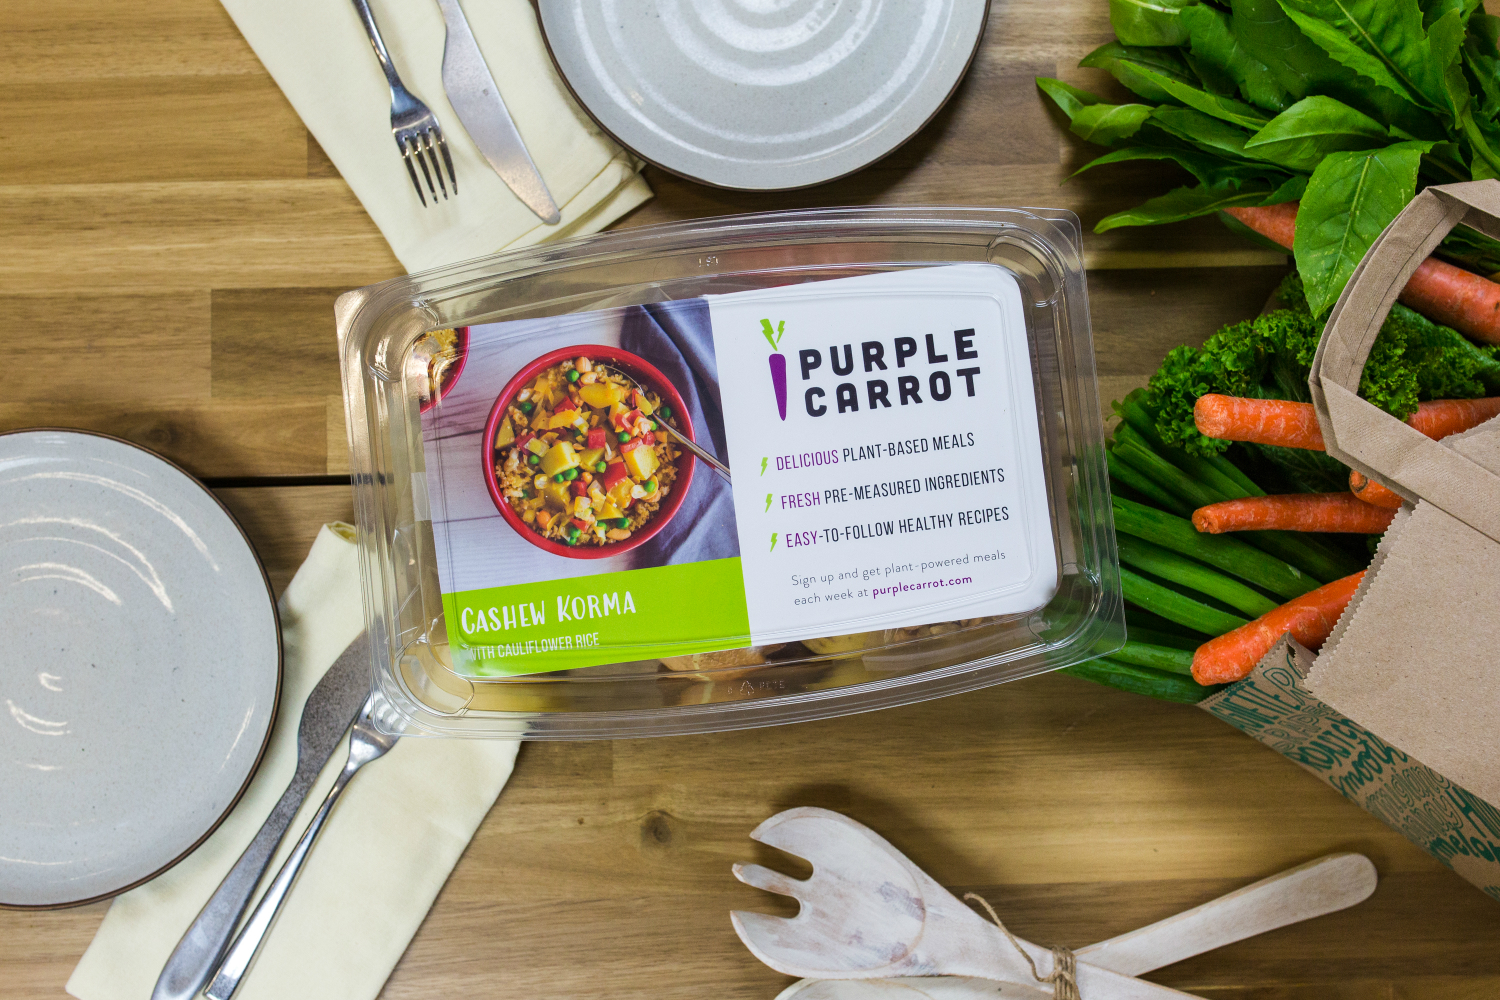 purple carrot whole foods market vegan meal kits kit